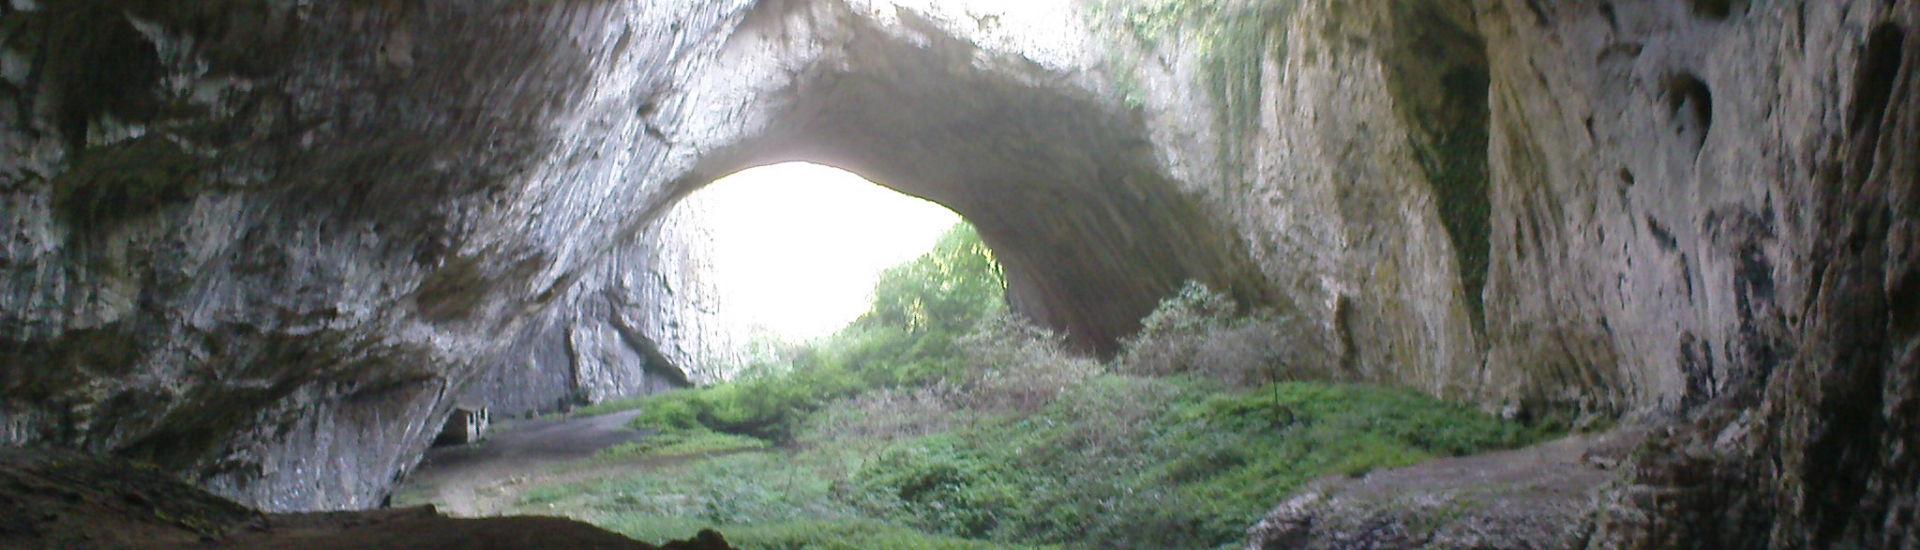 Крушунски водопади, Деветашка пещера и Ловеч